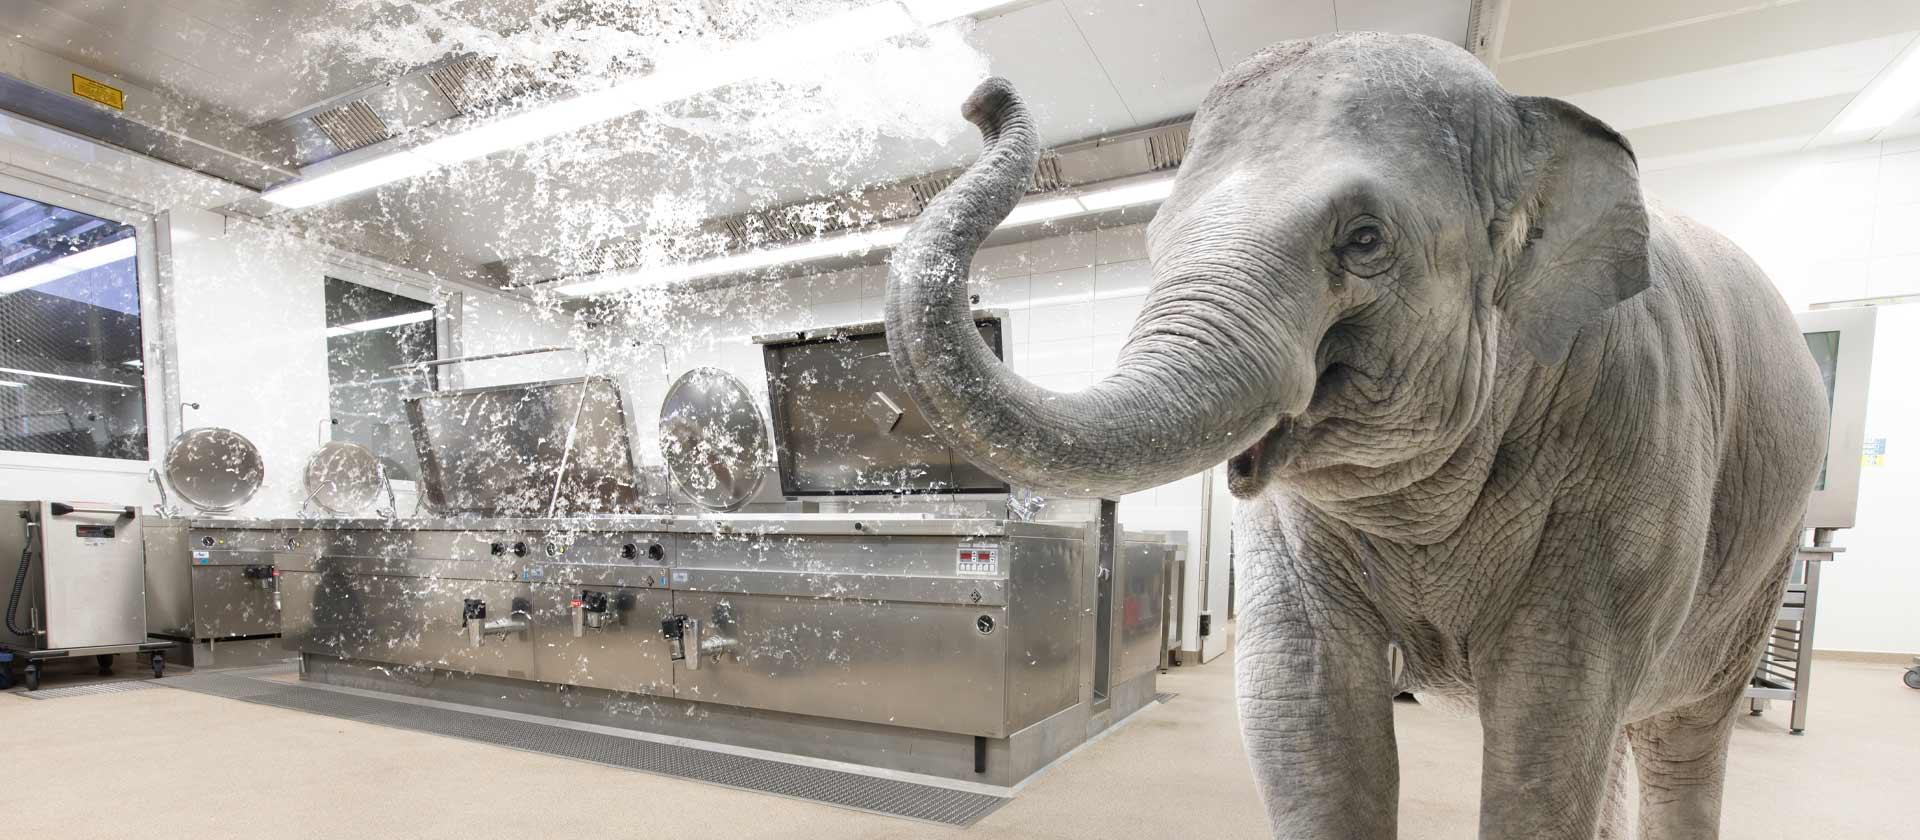 Inside Plan Küche mit Elefant